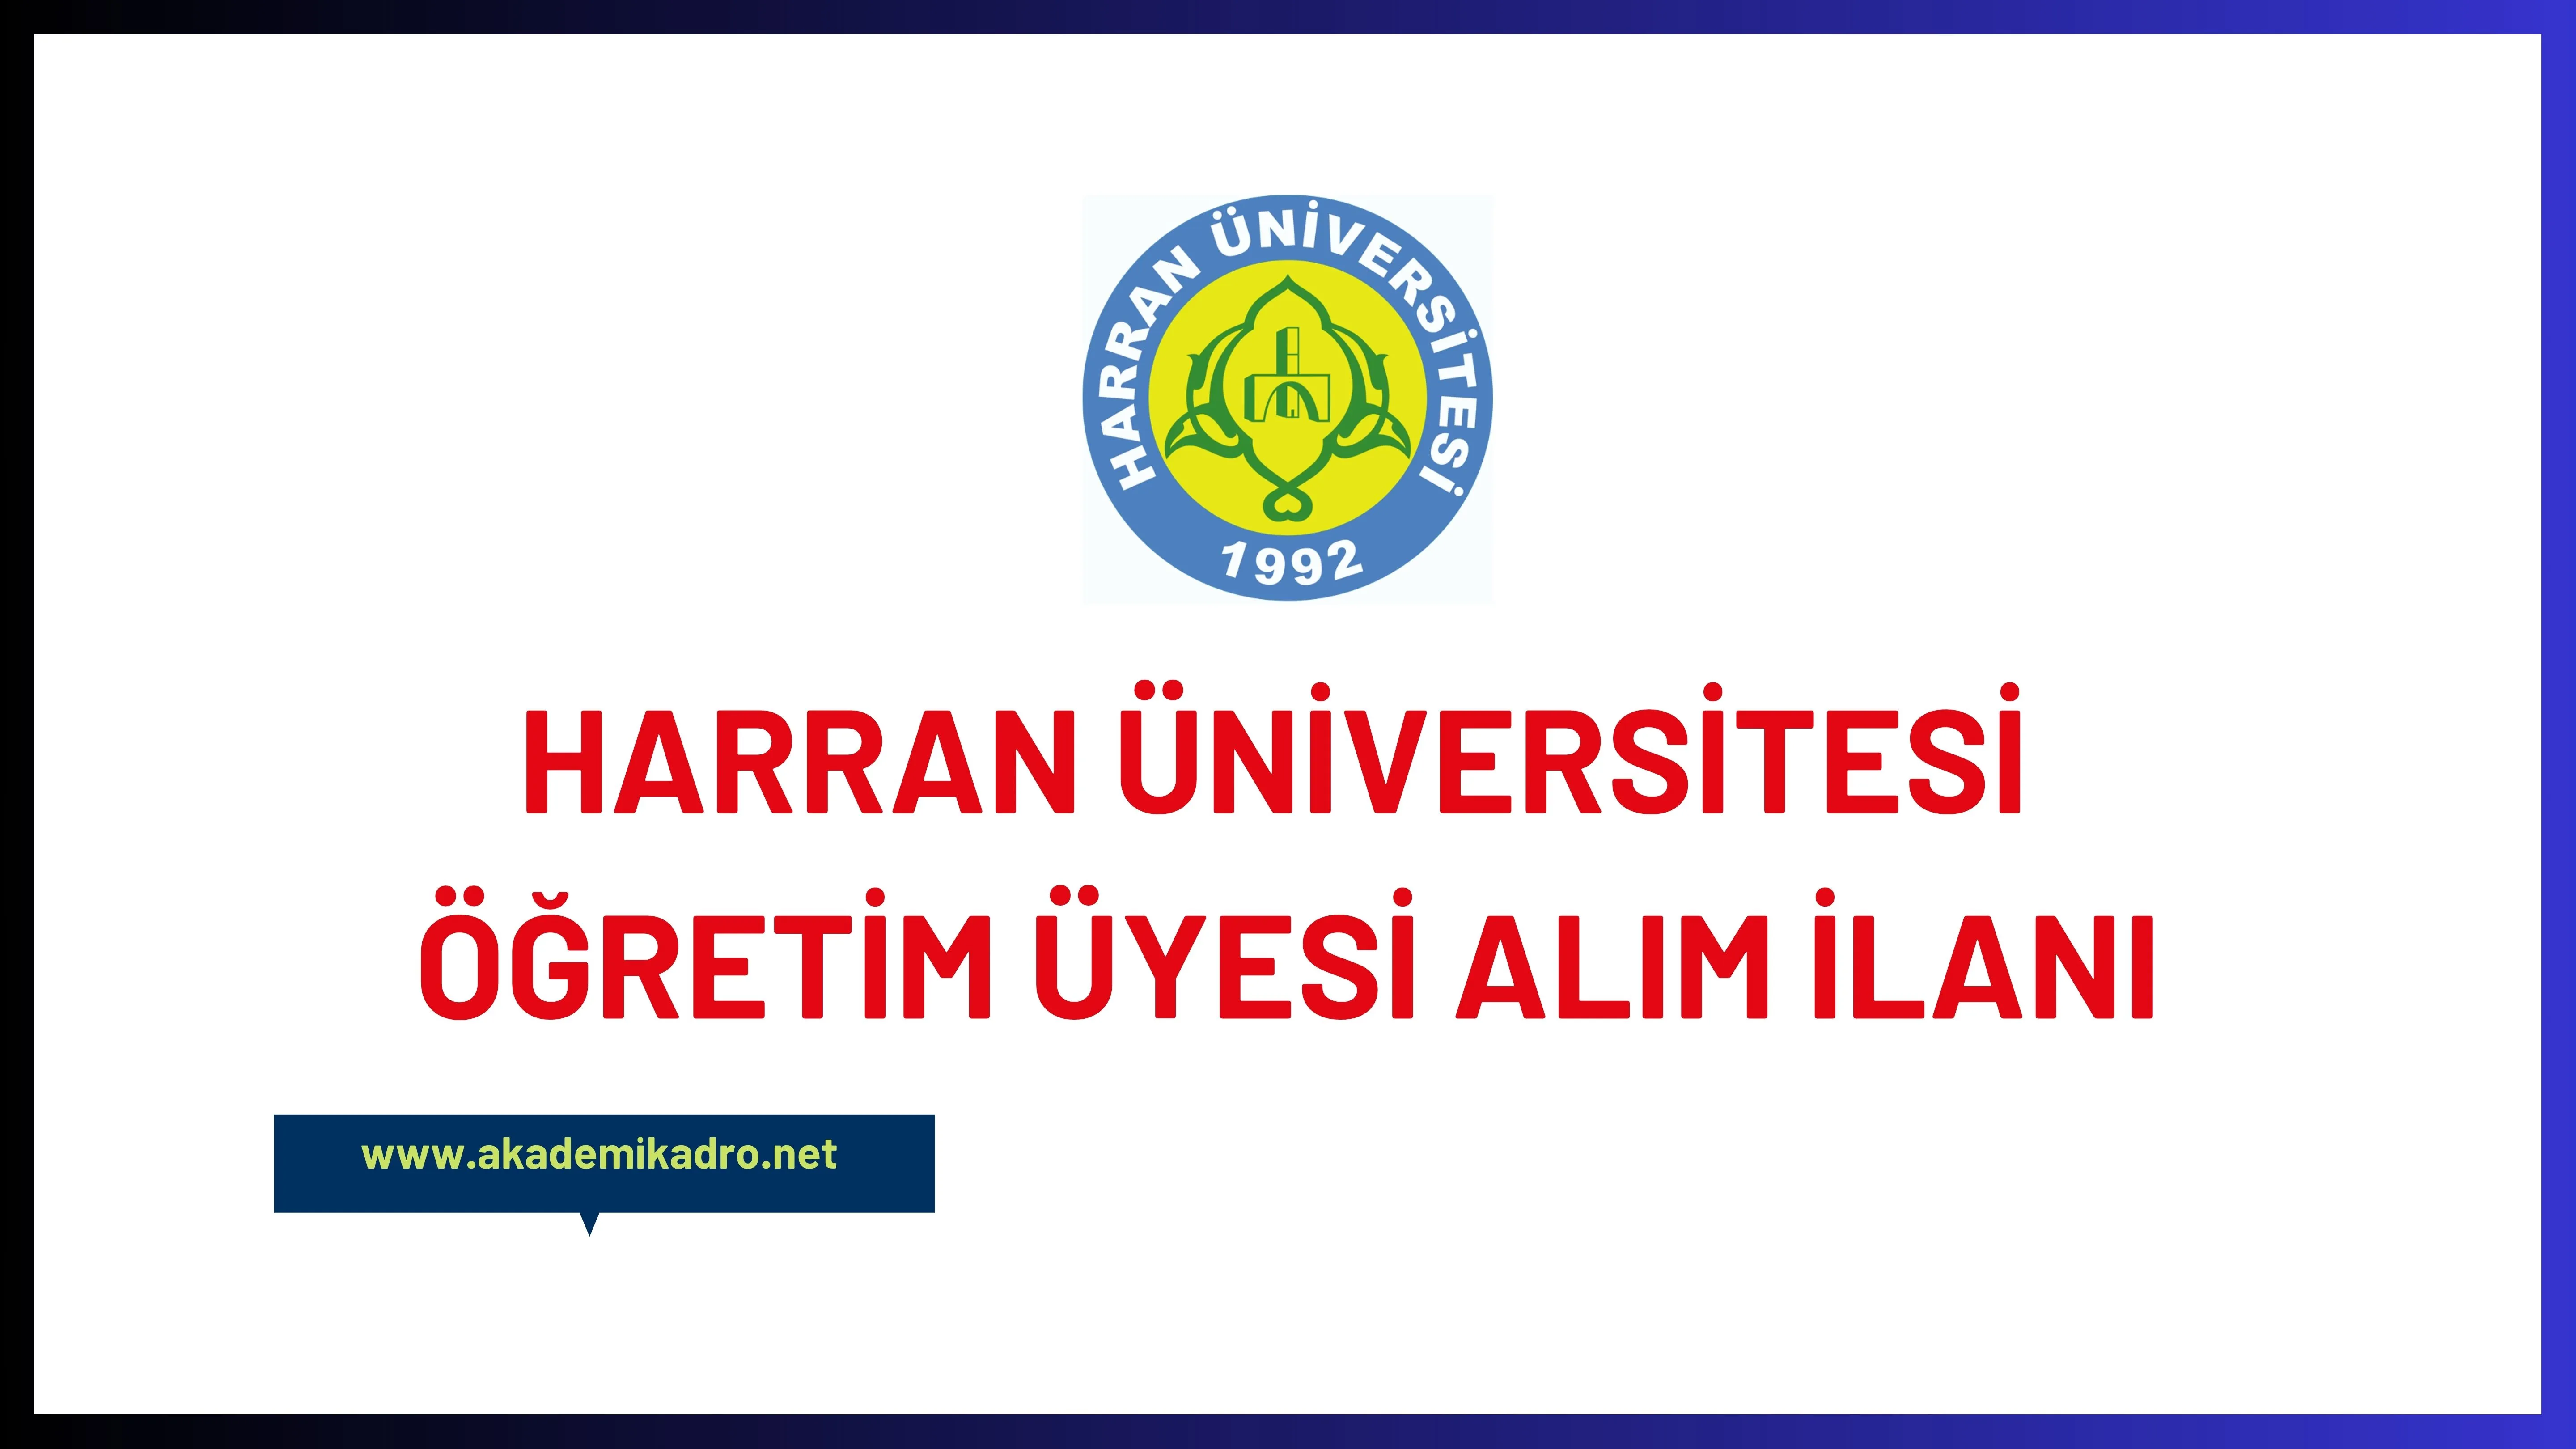 Harran Üniversitesi birçok alandan 44 öğretim üyesi alacak.